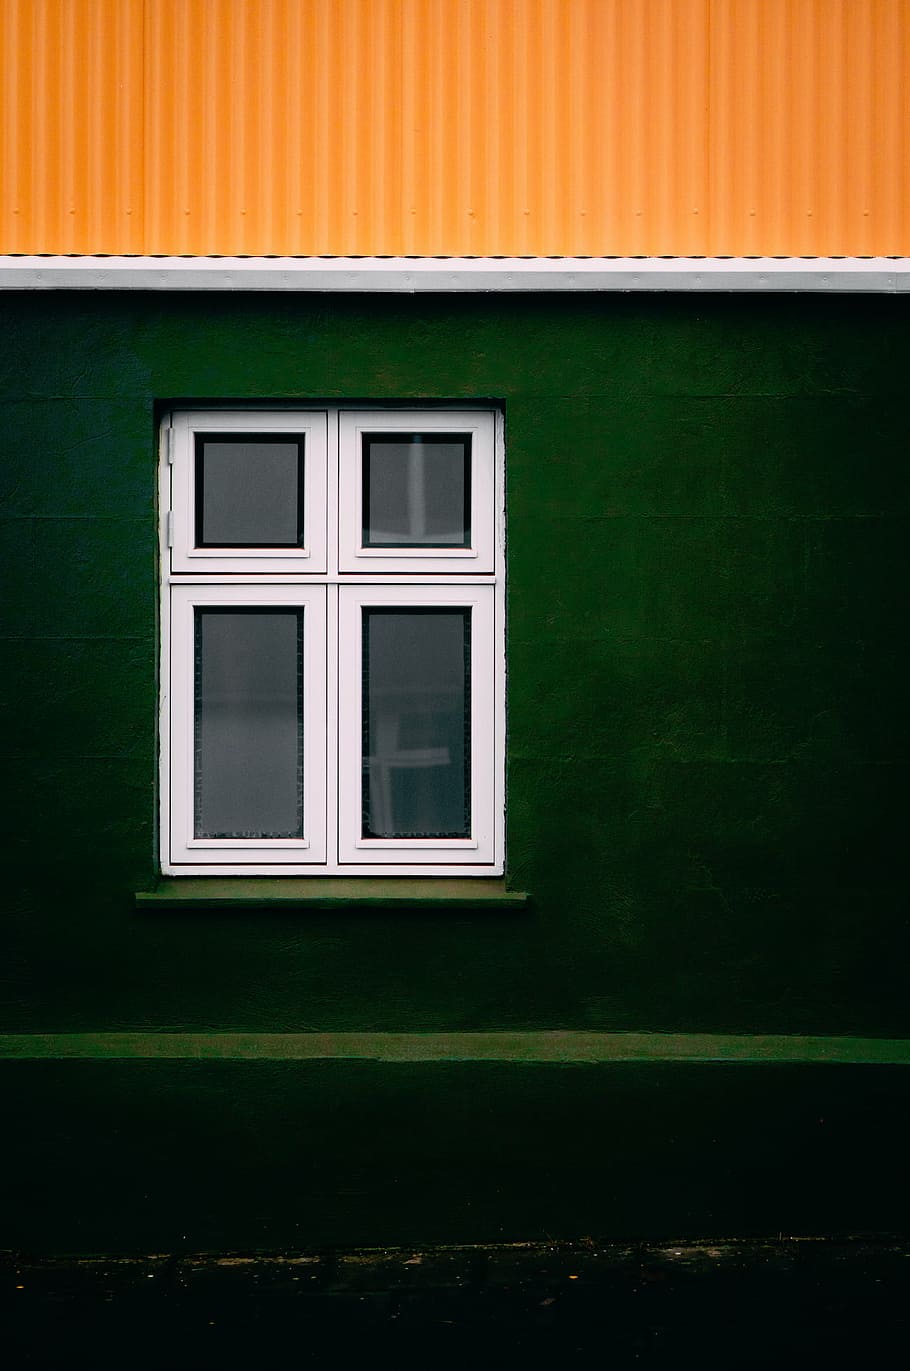 長方形, 白, フレームガラス窓, 場所, 窓, 構造, ガラス, 緑, 黄色, 建築